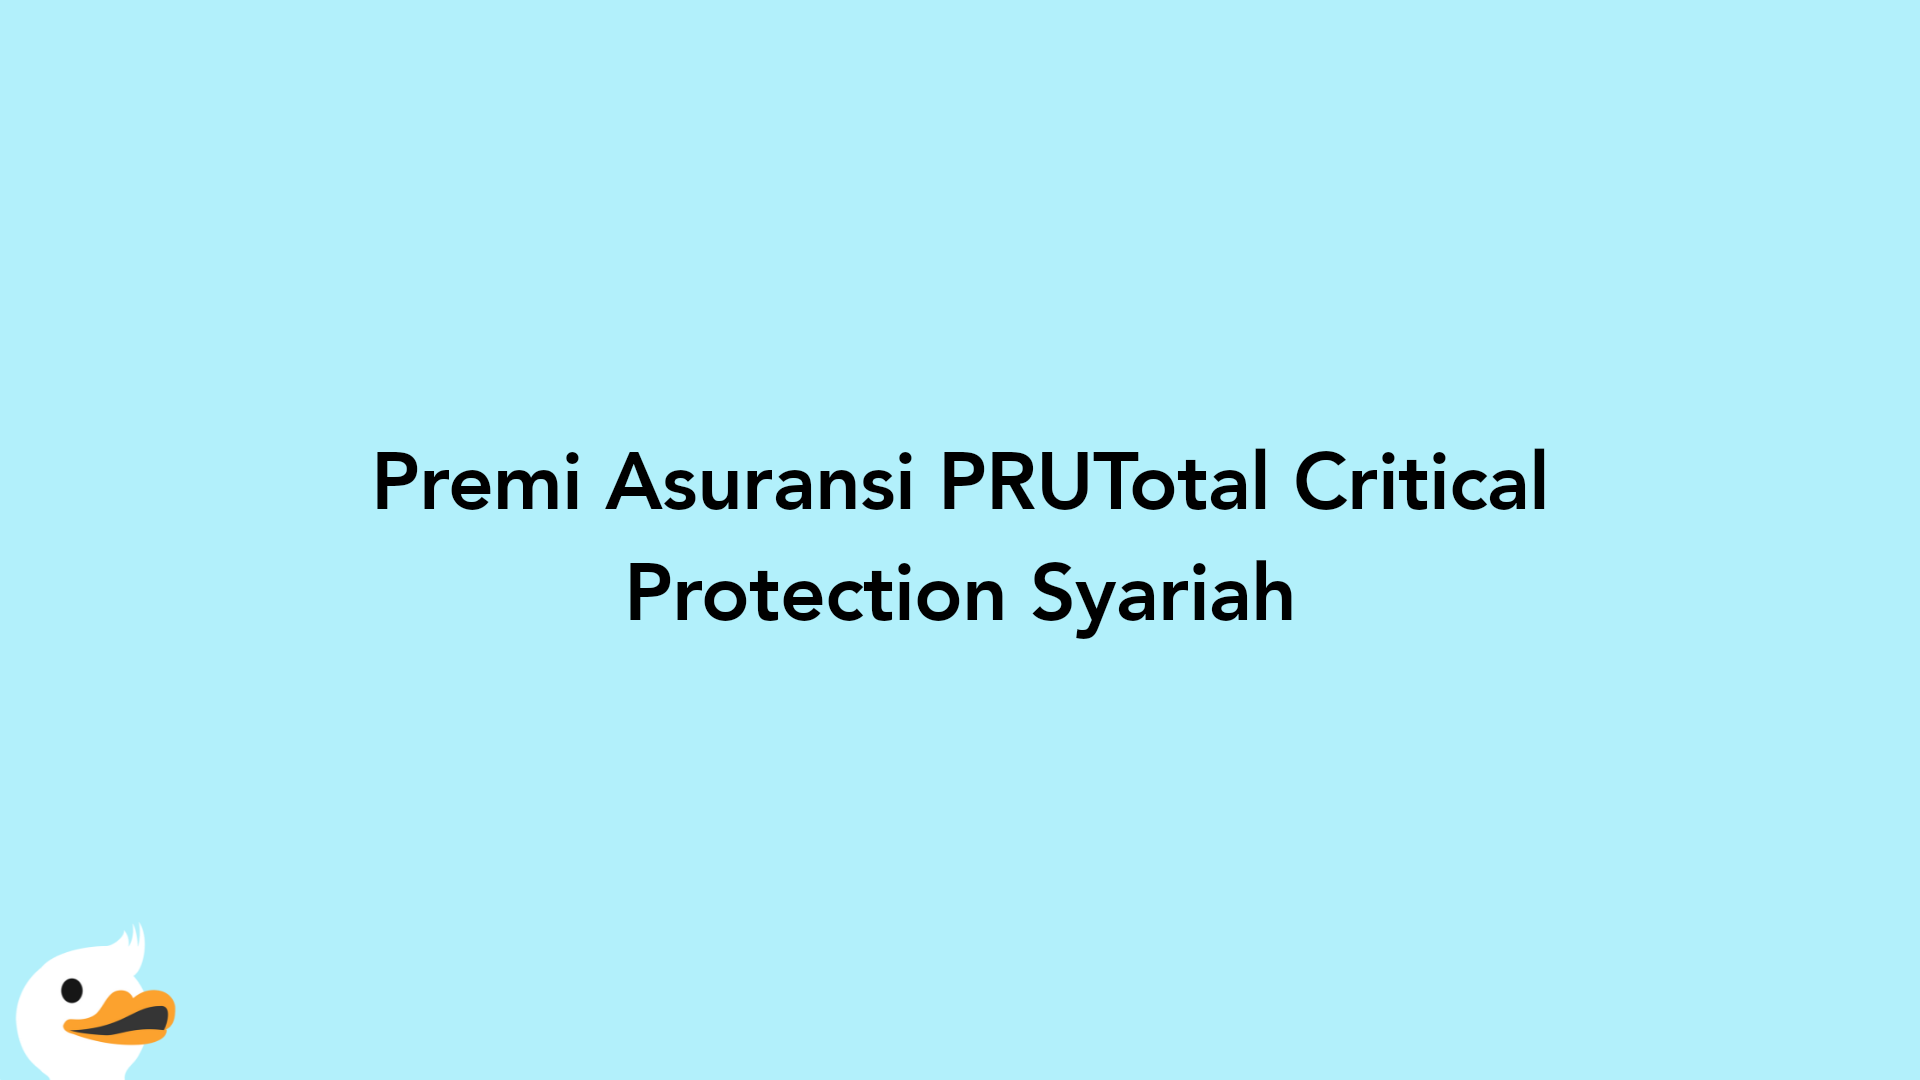 Premi Asuransi PRUTotal Critical Protection Syariah